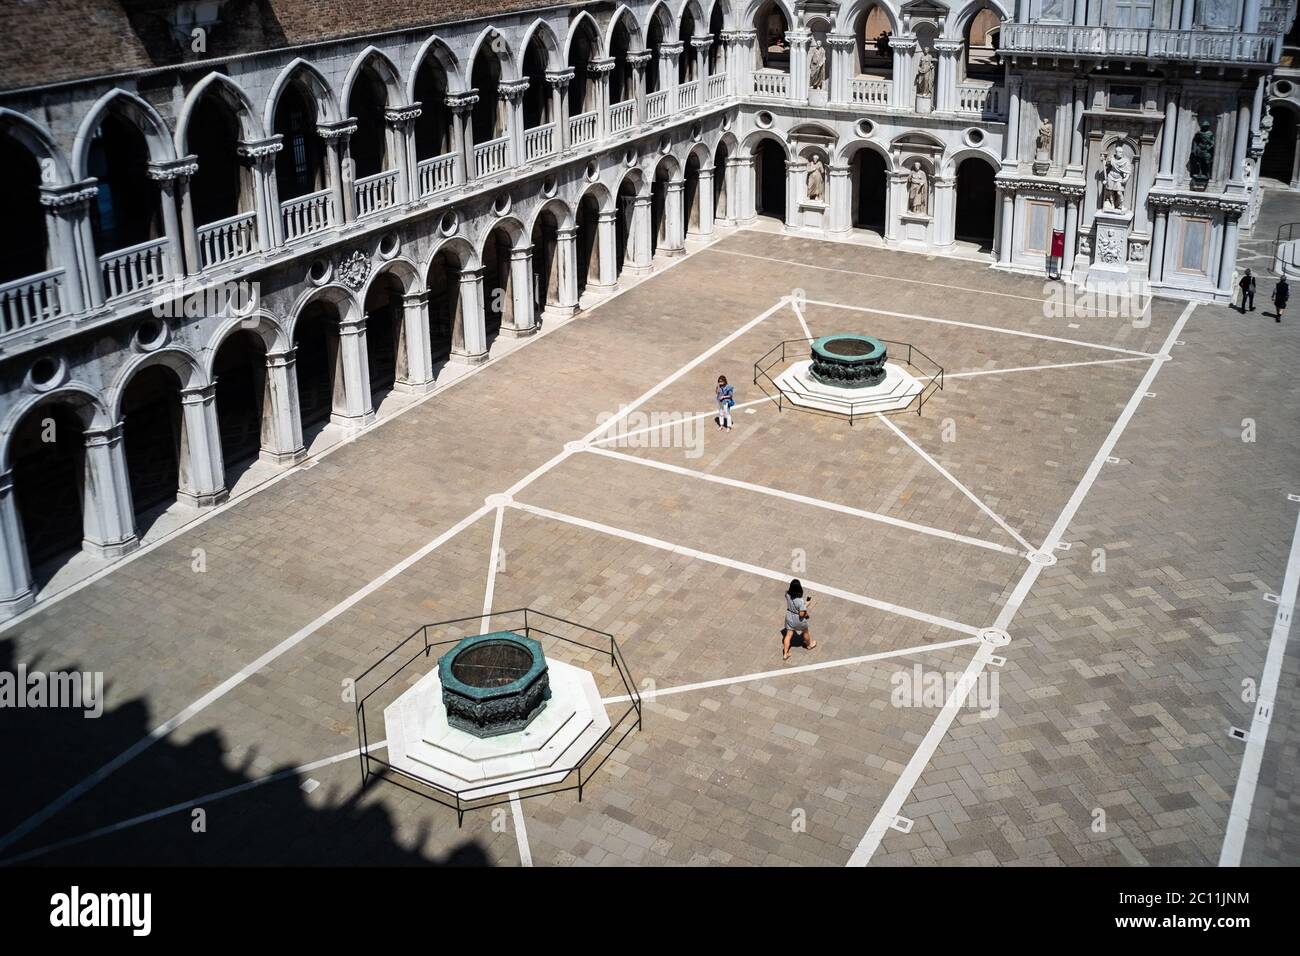 VENEZIA, ITALIA - 13 GIUGNO 2020: I turisti visitano il Museo del Palazzo Ducale il giorno della riapertura dopo più di 3 mesi di chiusura a causa della chiusura del Covid-19 il 13 giugno 2020 a Venezia. Foto Stock